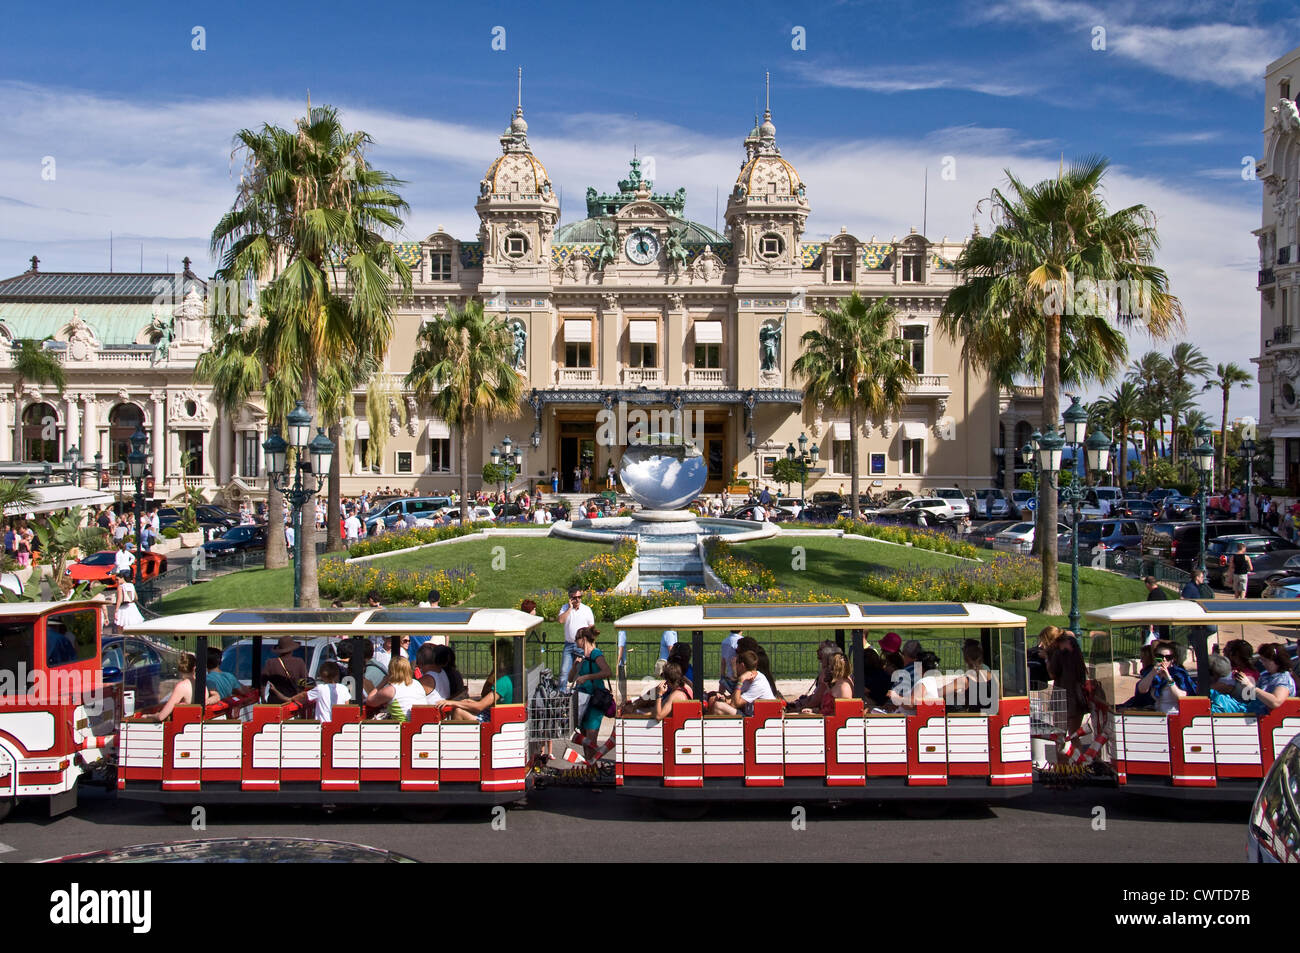 Touristic small train in front of the casino of Monte-Carlo - Monaco Stock Photo